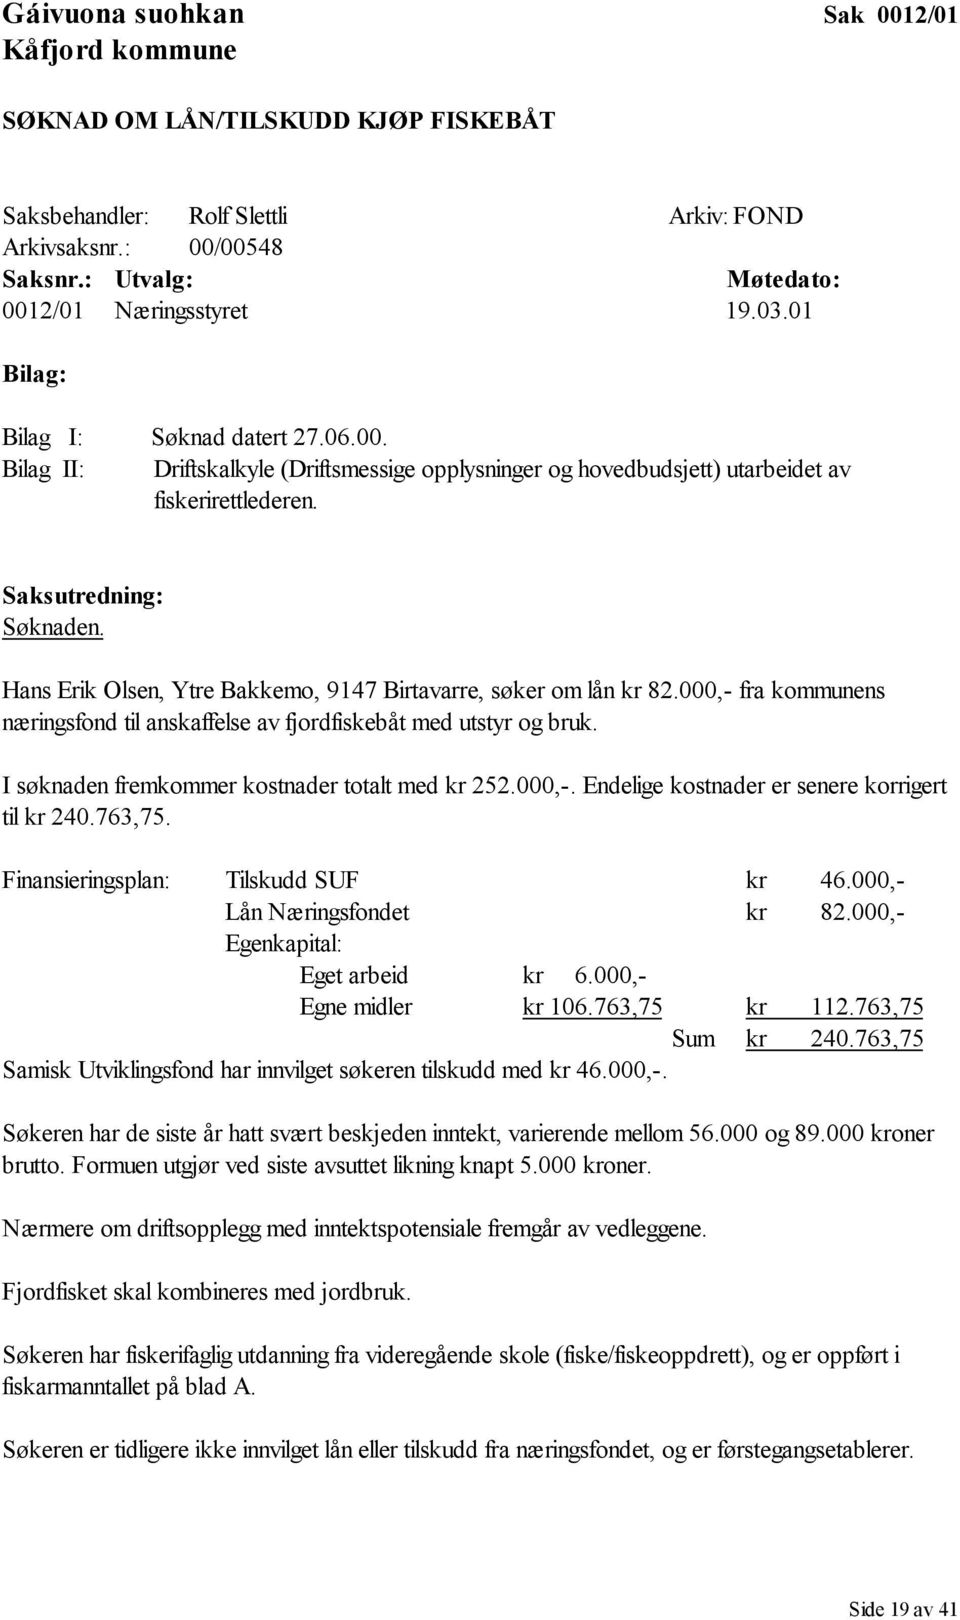 Hans Erik Olsen, Ytre Bakkemo, 9147 Birtavarre, søker om lån kr 82.000,- fra kommunens næringsfond til anskaffelse av fjordfiskebåt med utstyr og bruk.